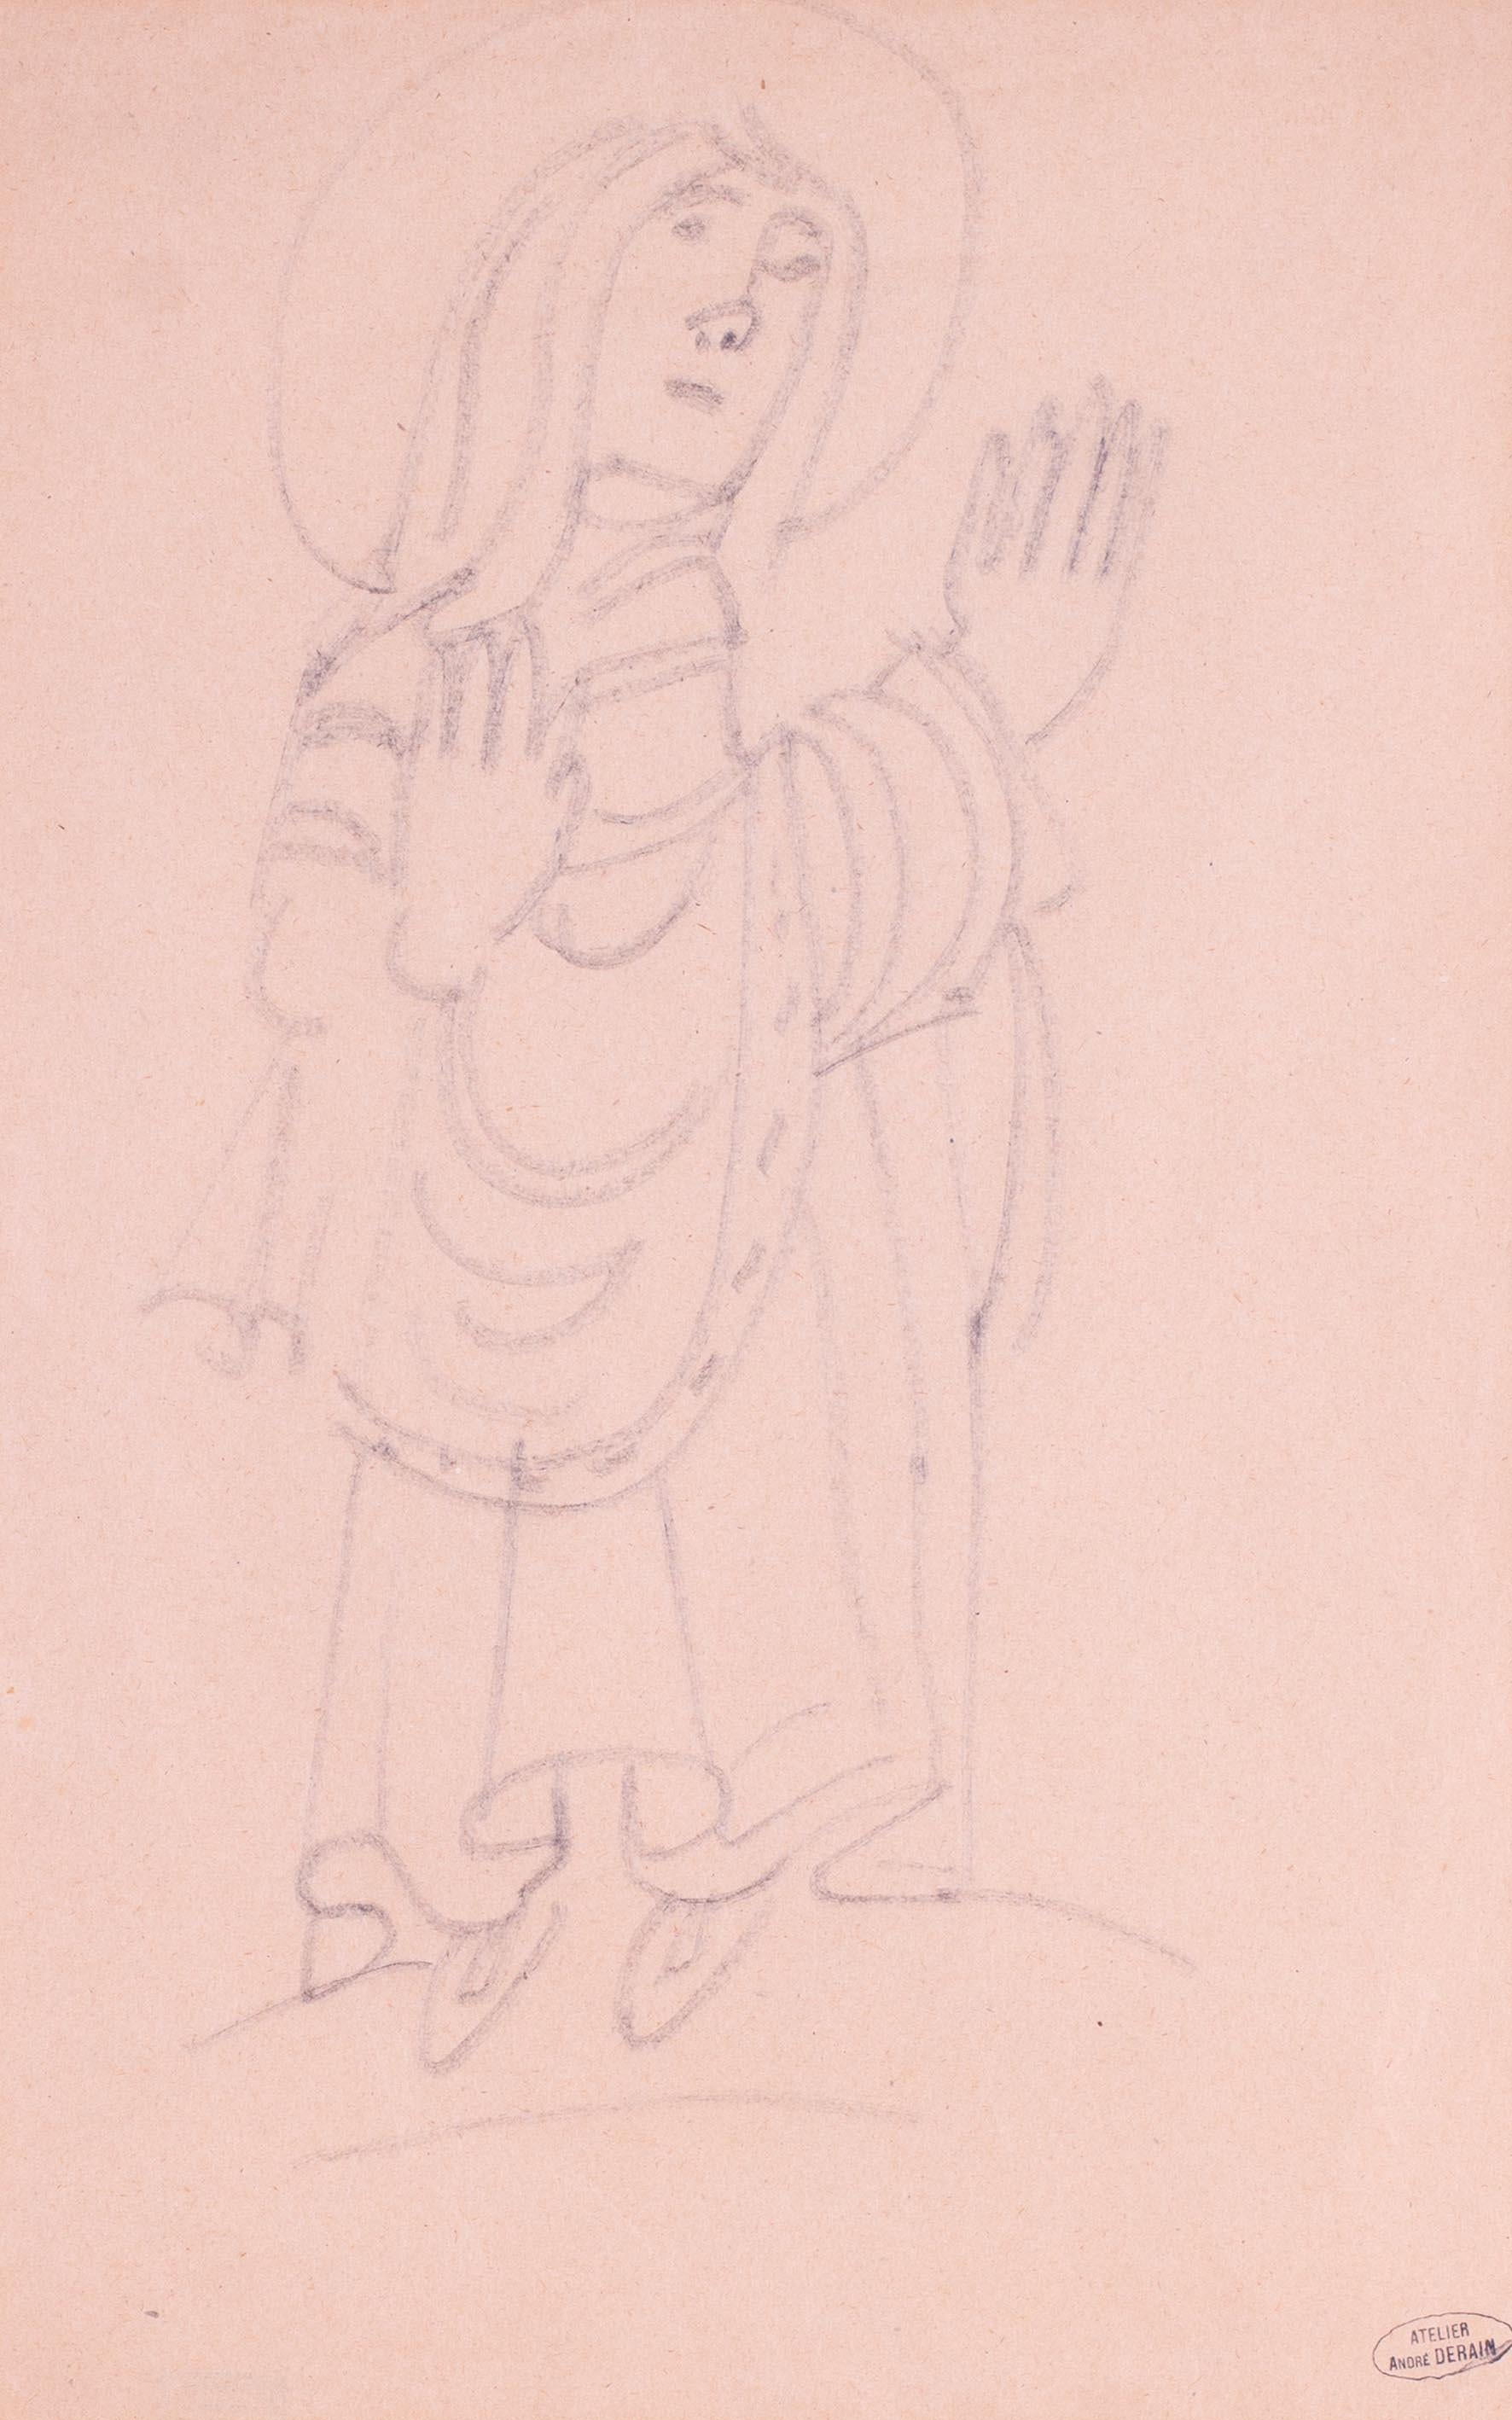 Dessin fauve français du début du 20e siècle d'Andre Derain représentant un saint - Art de André Derain